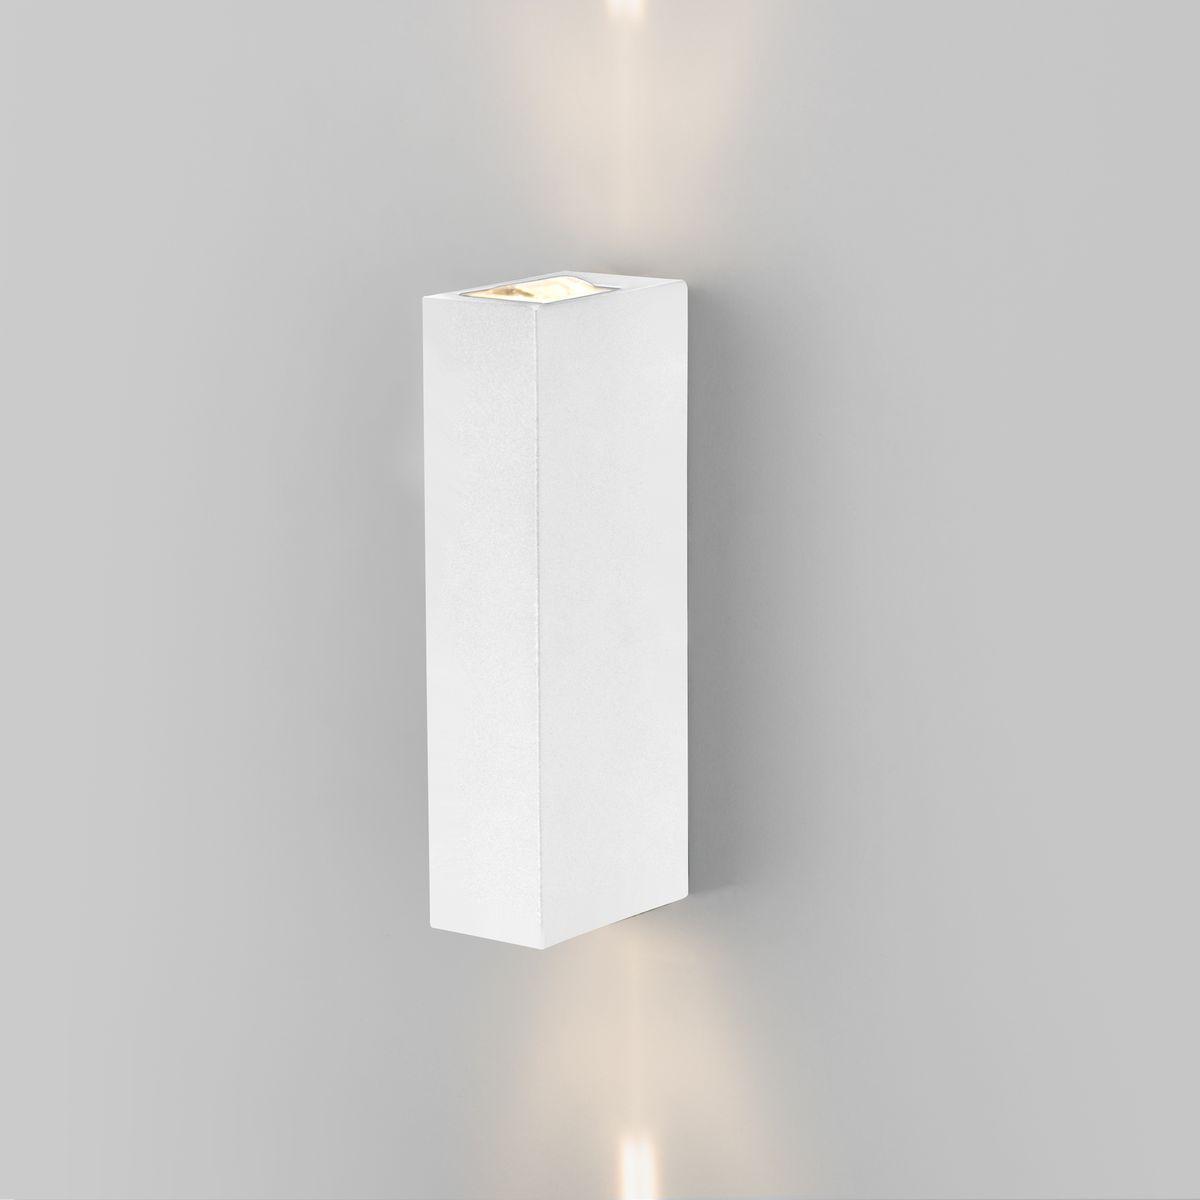 Уличный настенный светодиодный светильник Elektrostandard Blaze 35136/W белый 4690389179174 светодиодный шар 90 см белый rl b90 300 w